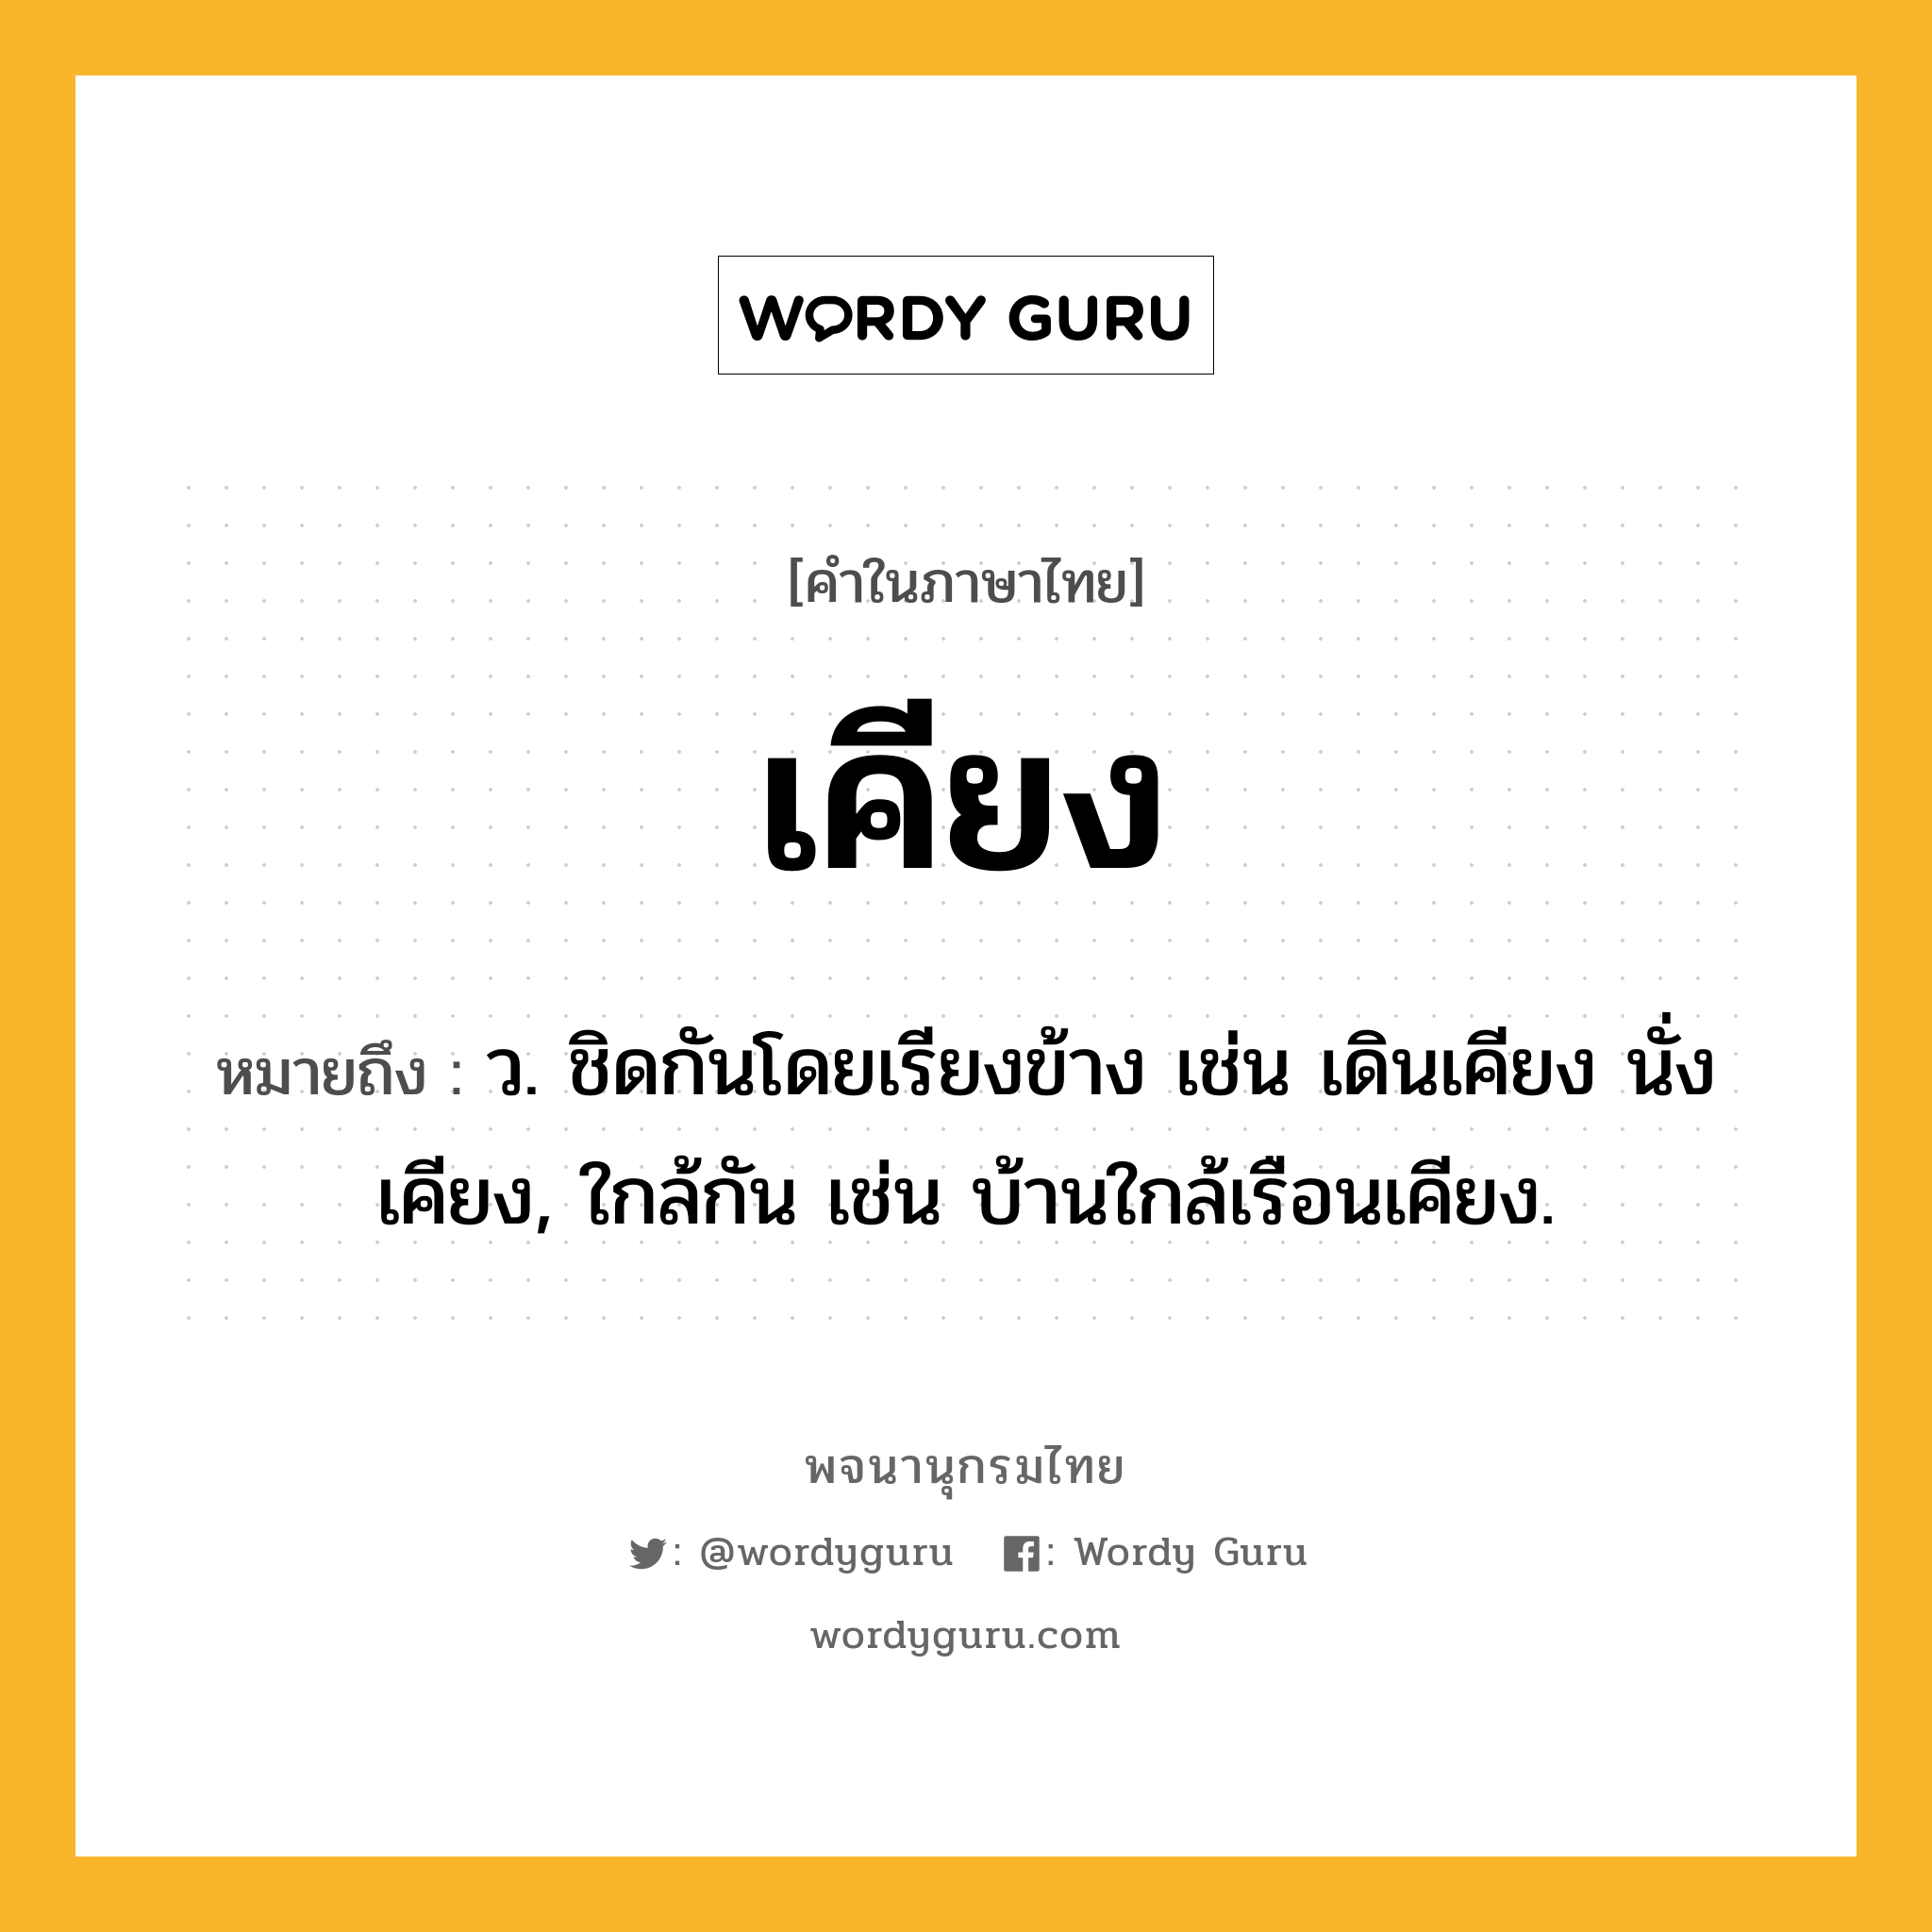 เคียง ความหมาย หมายถึงอะไร?, คำในภาษาไทย เคียง หมายถึง ว. ชิดกันโดยเรียงข้าง เช่น เดินเคียง นั่งเคียง, ใกล้กัน เช่น บ้านใกล้เรือนเคียง.